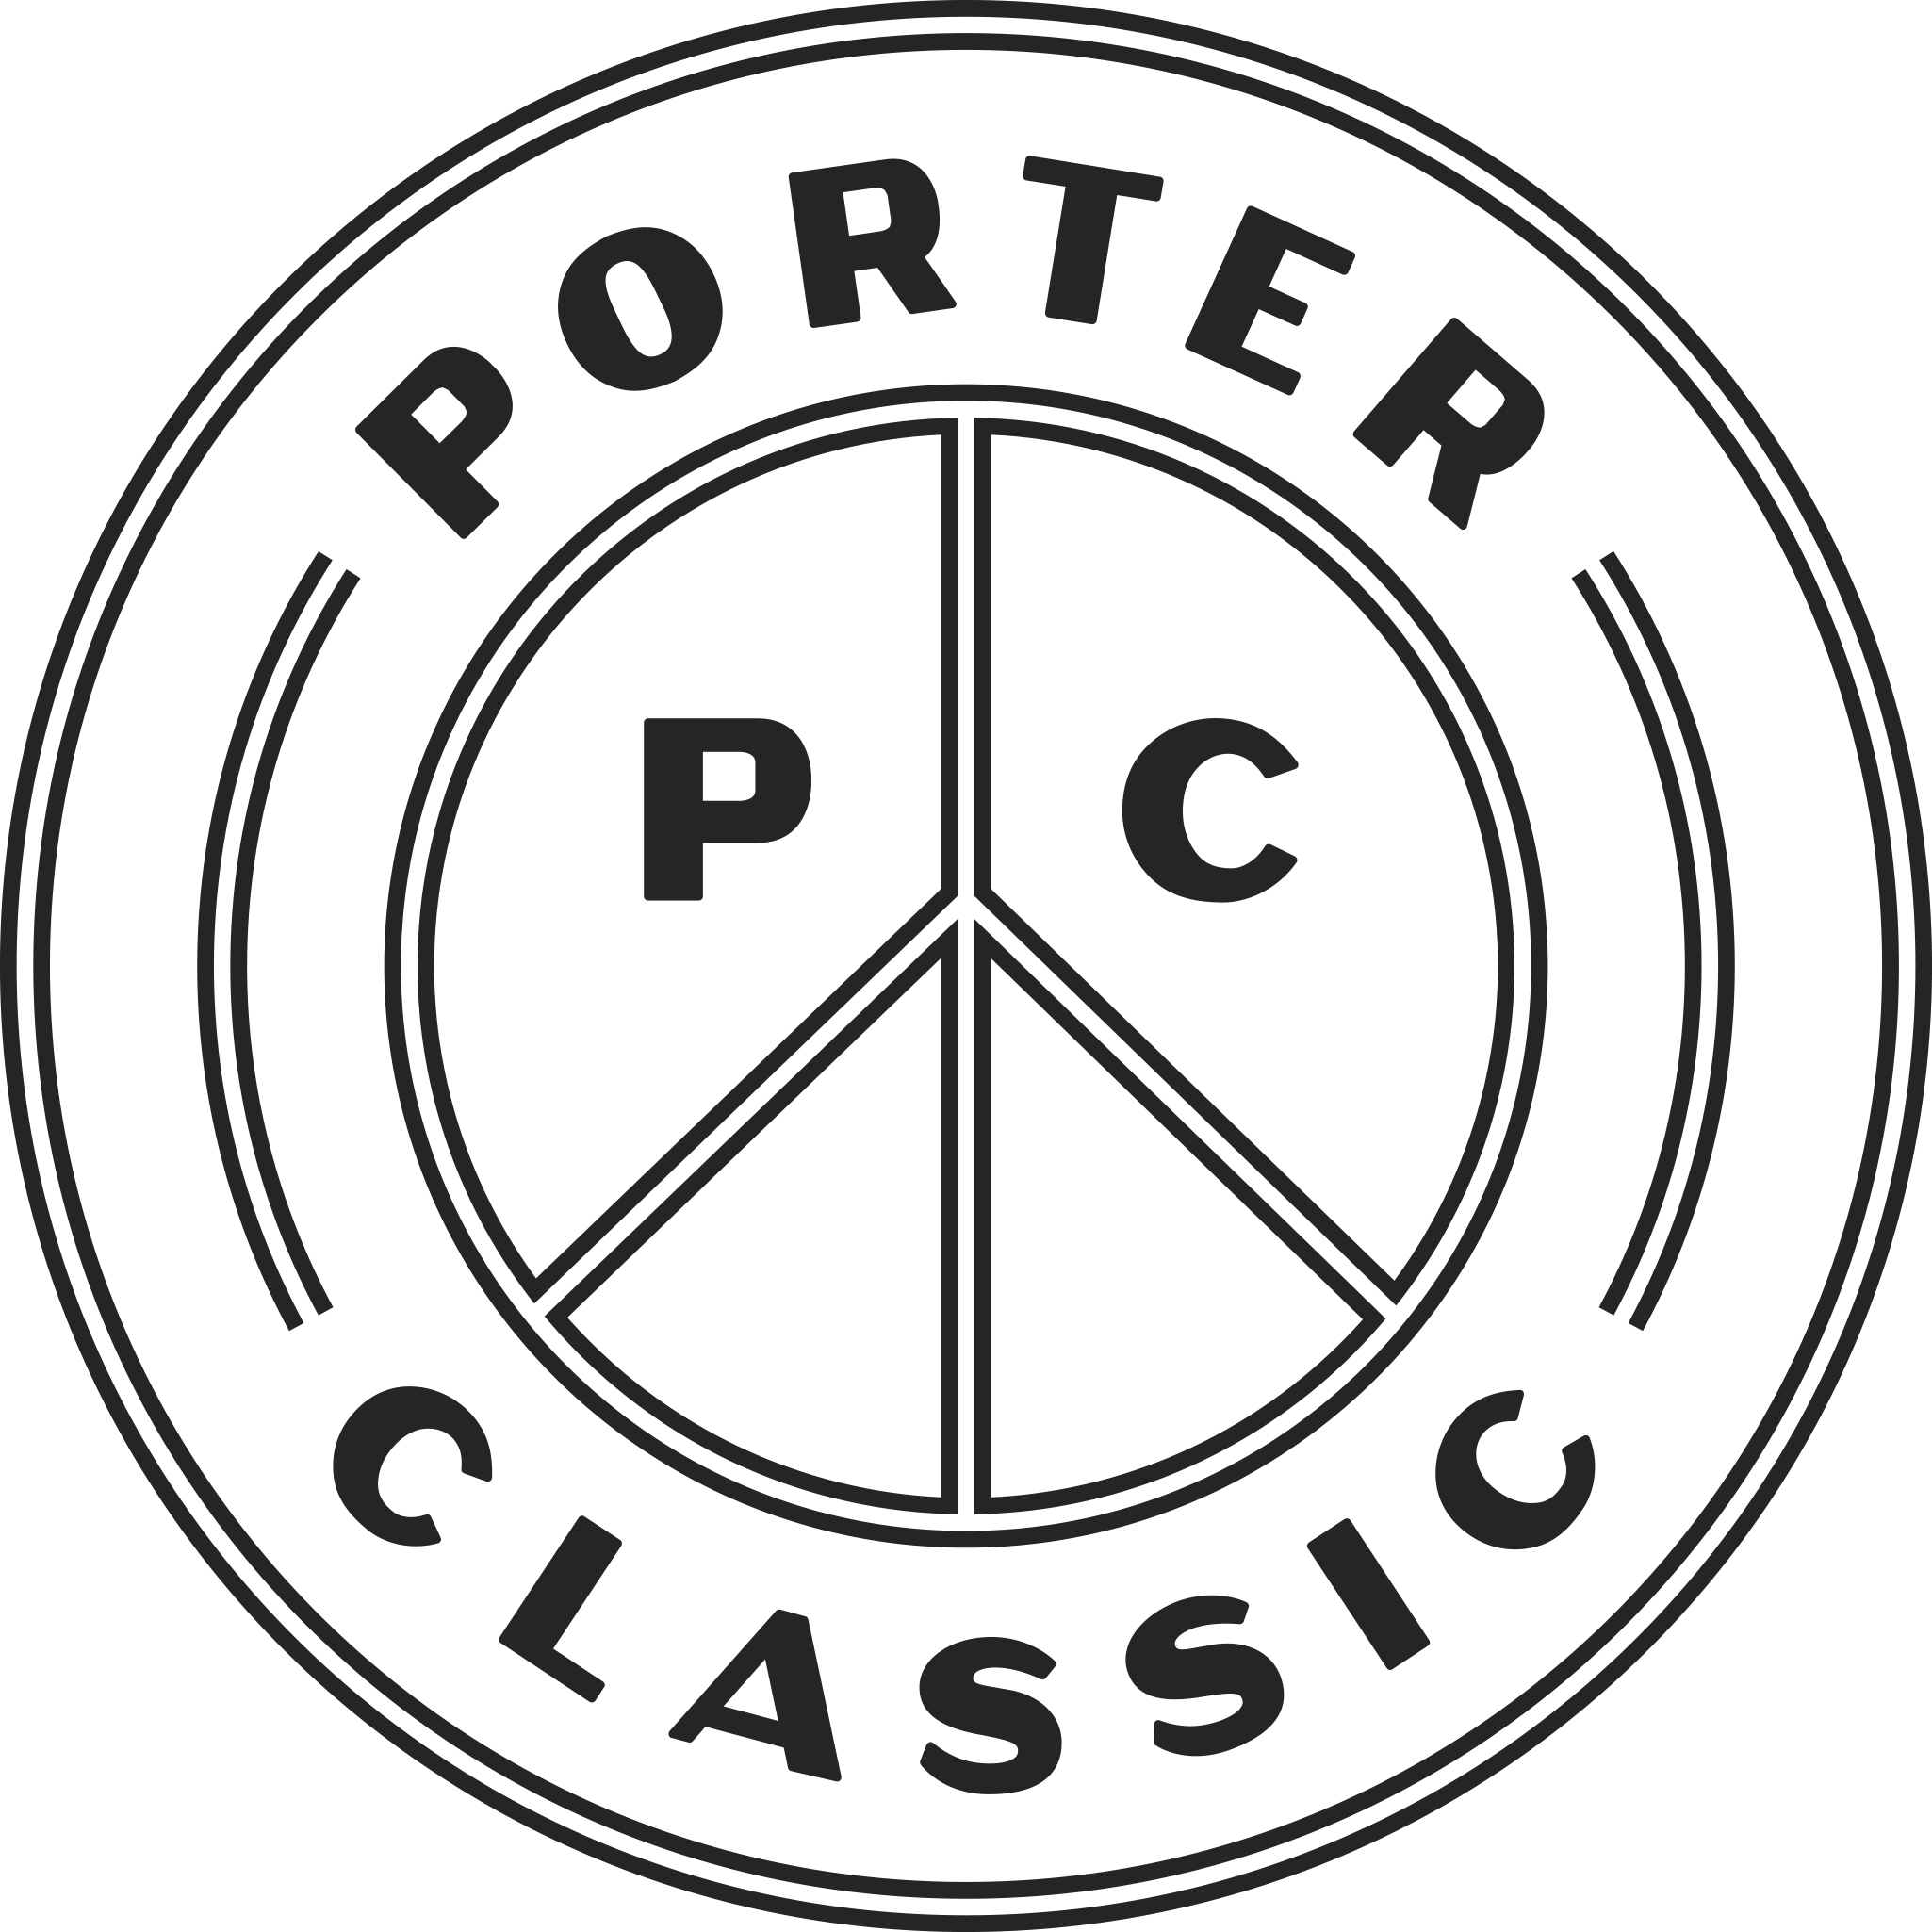 PORTER CLASSIC|ネックレス|PORTER CLASSIC ハンドワーク HAGIREネックレス